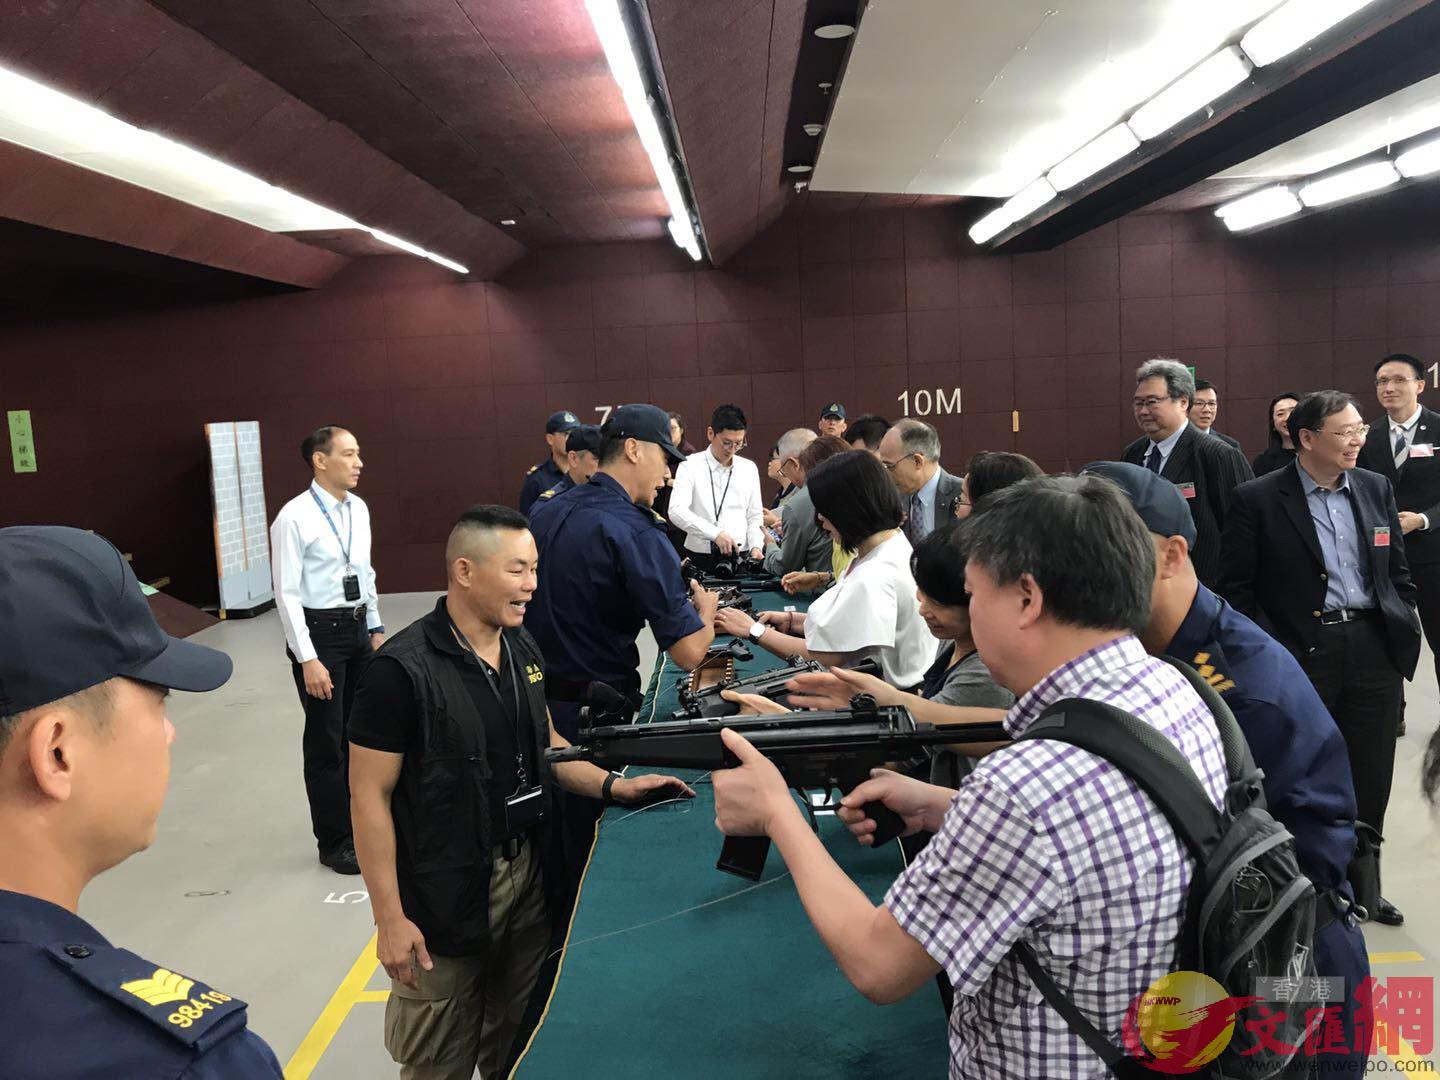 海關大樓室內練靶場A來賓可執起真實衝鋒槍拍照C全媒體記者陳卓康 攝